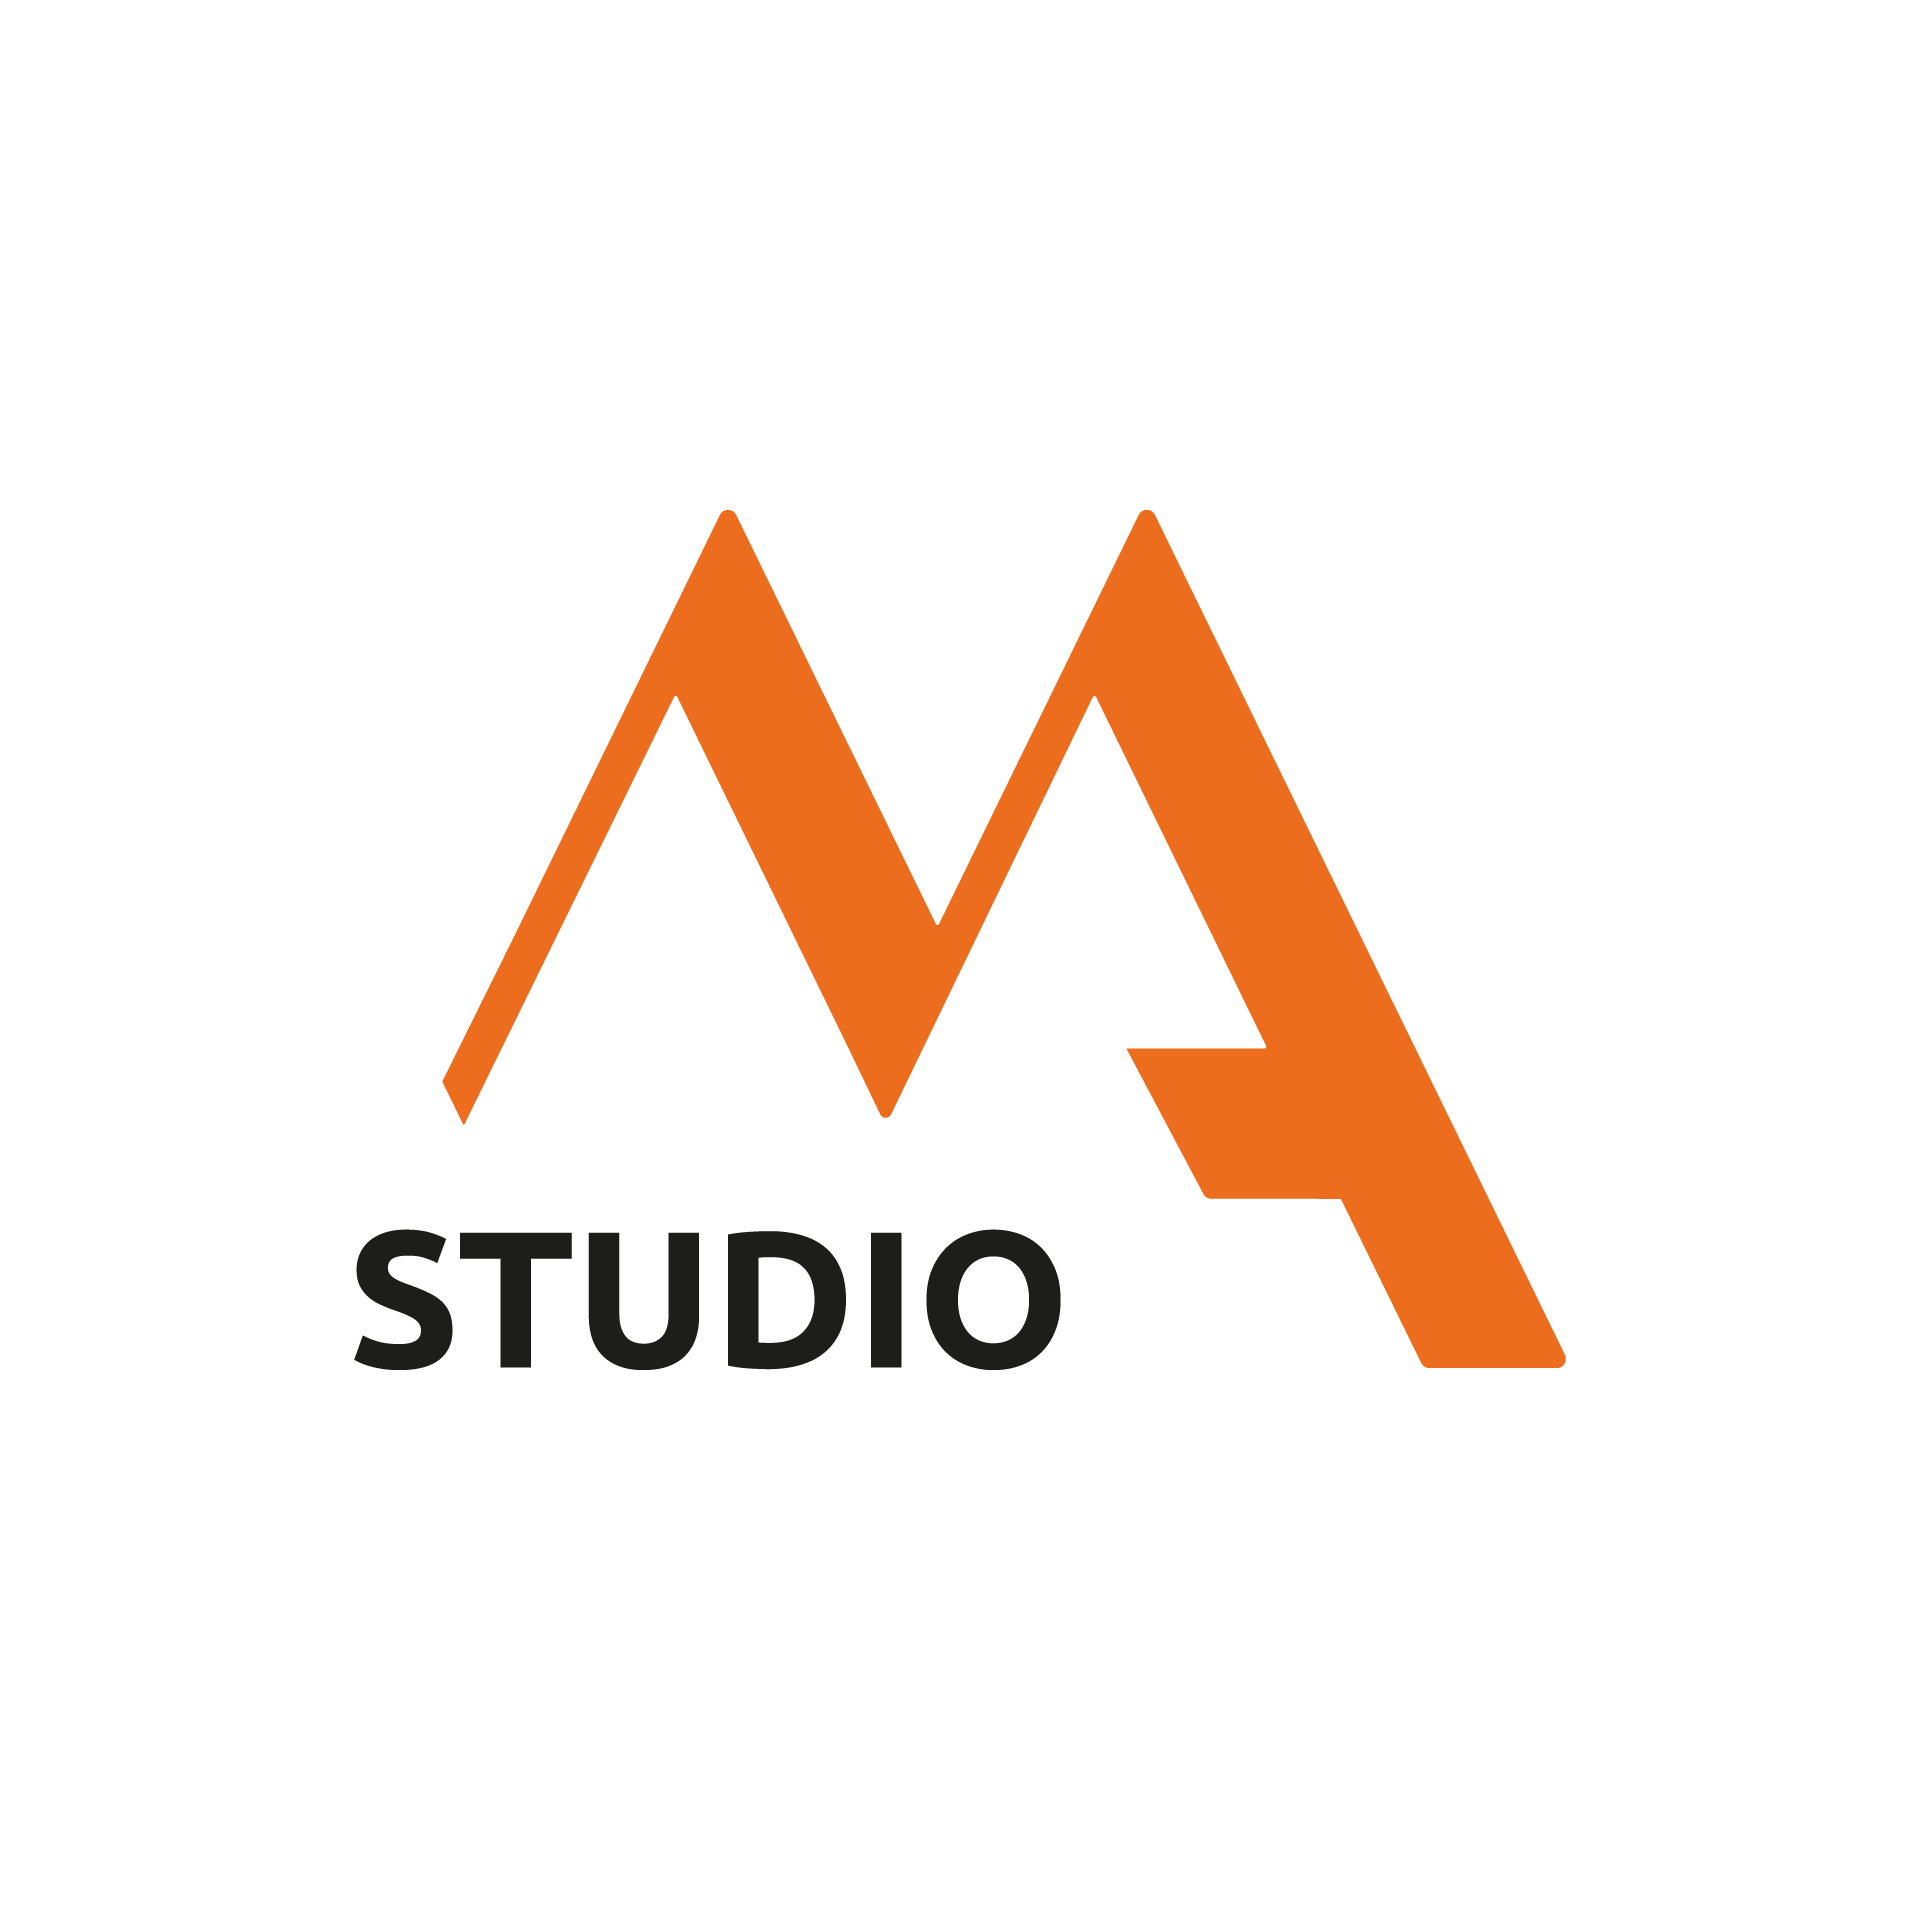 Studio-Maxa-Compresso-ArancioNero